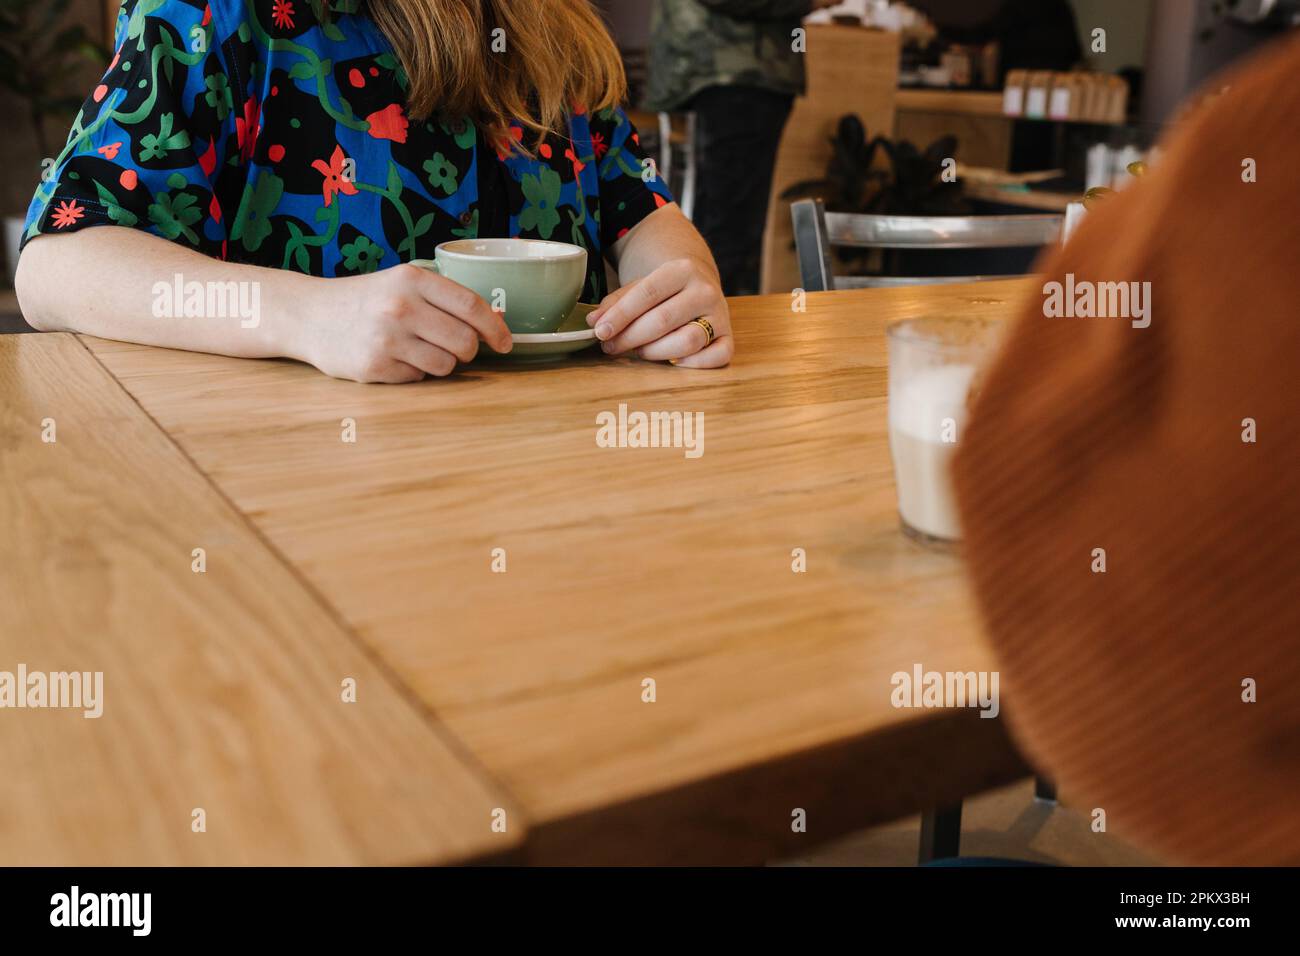 Deux tasses à café et mains de deux personnes assises à table Banque D'Images